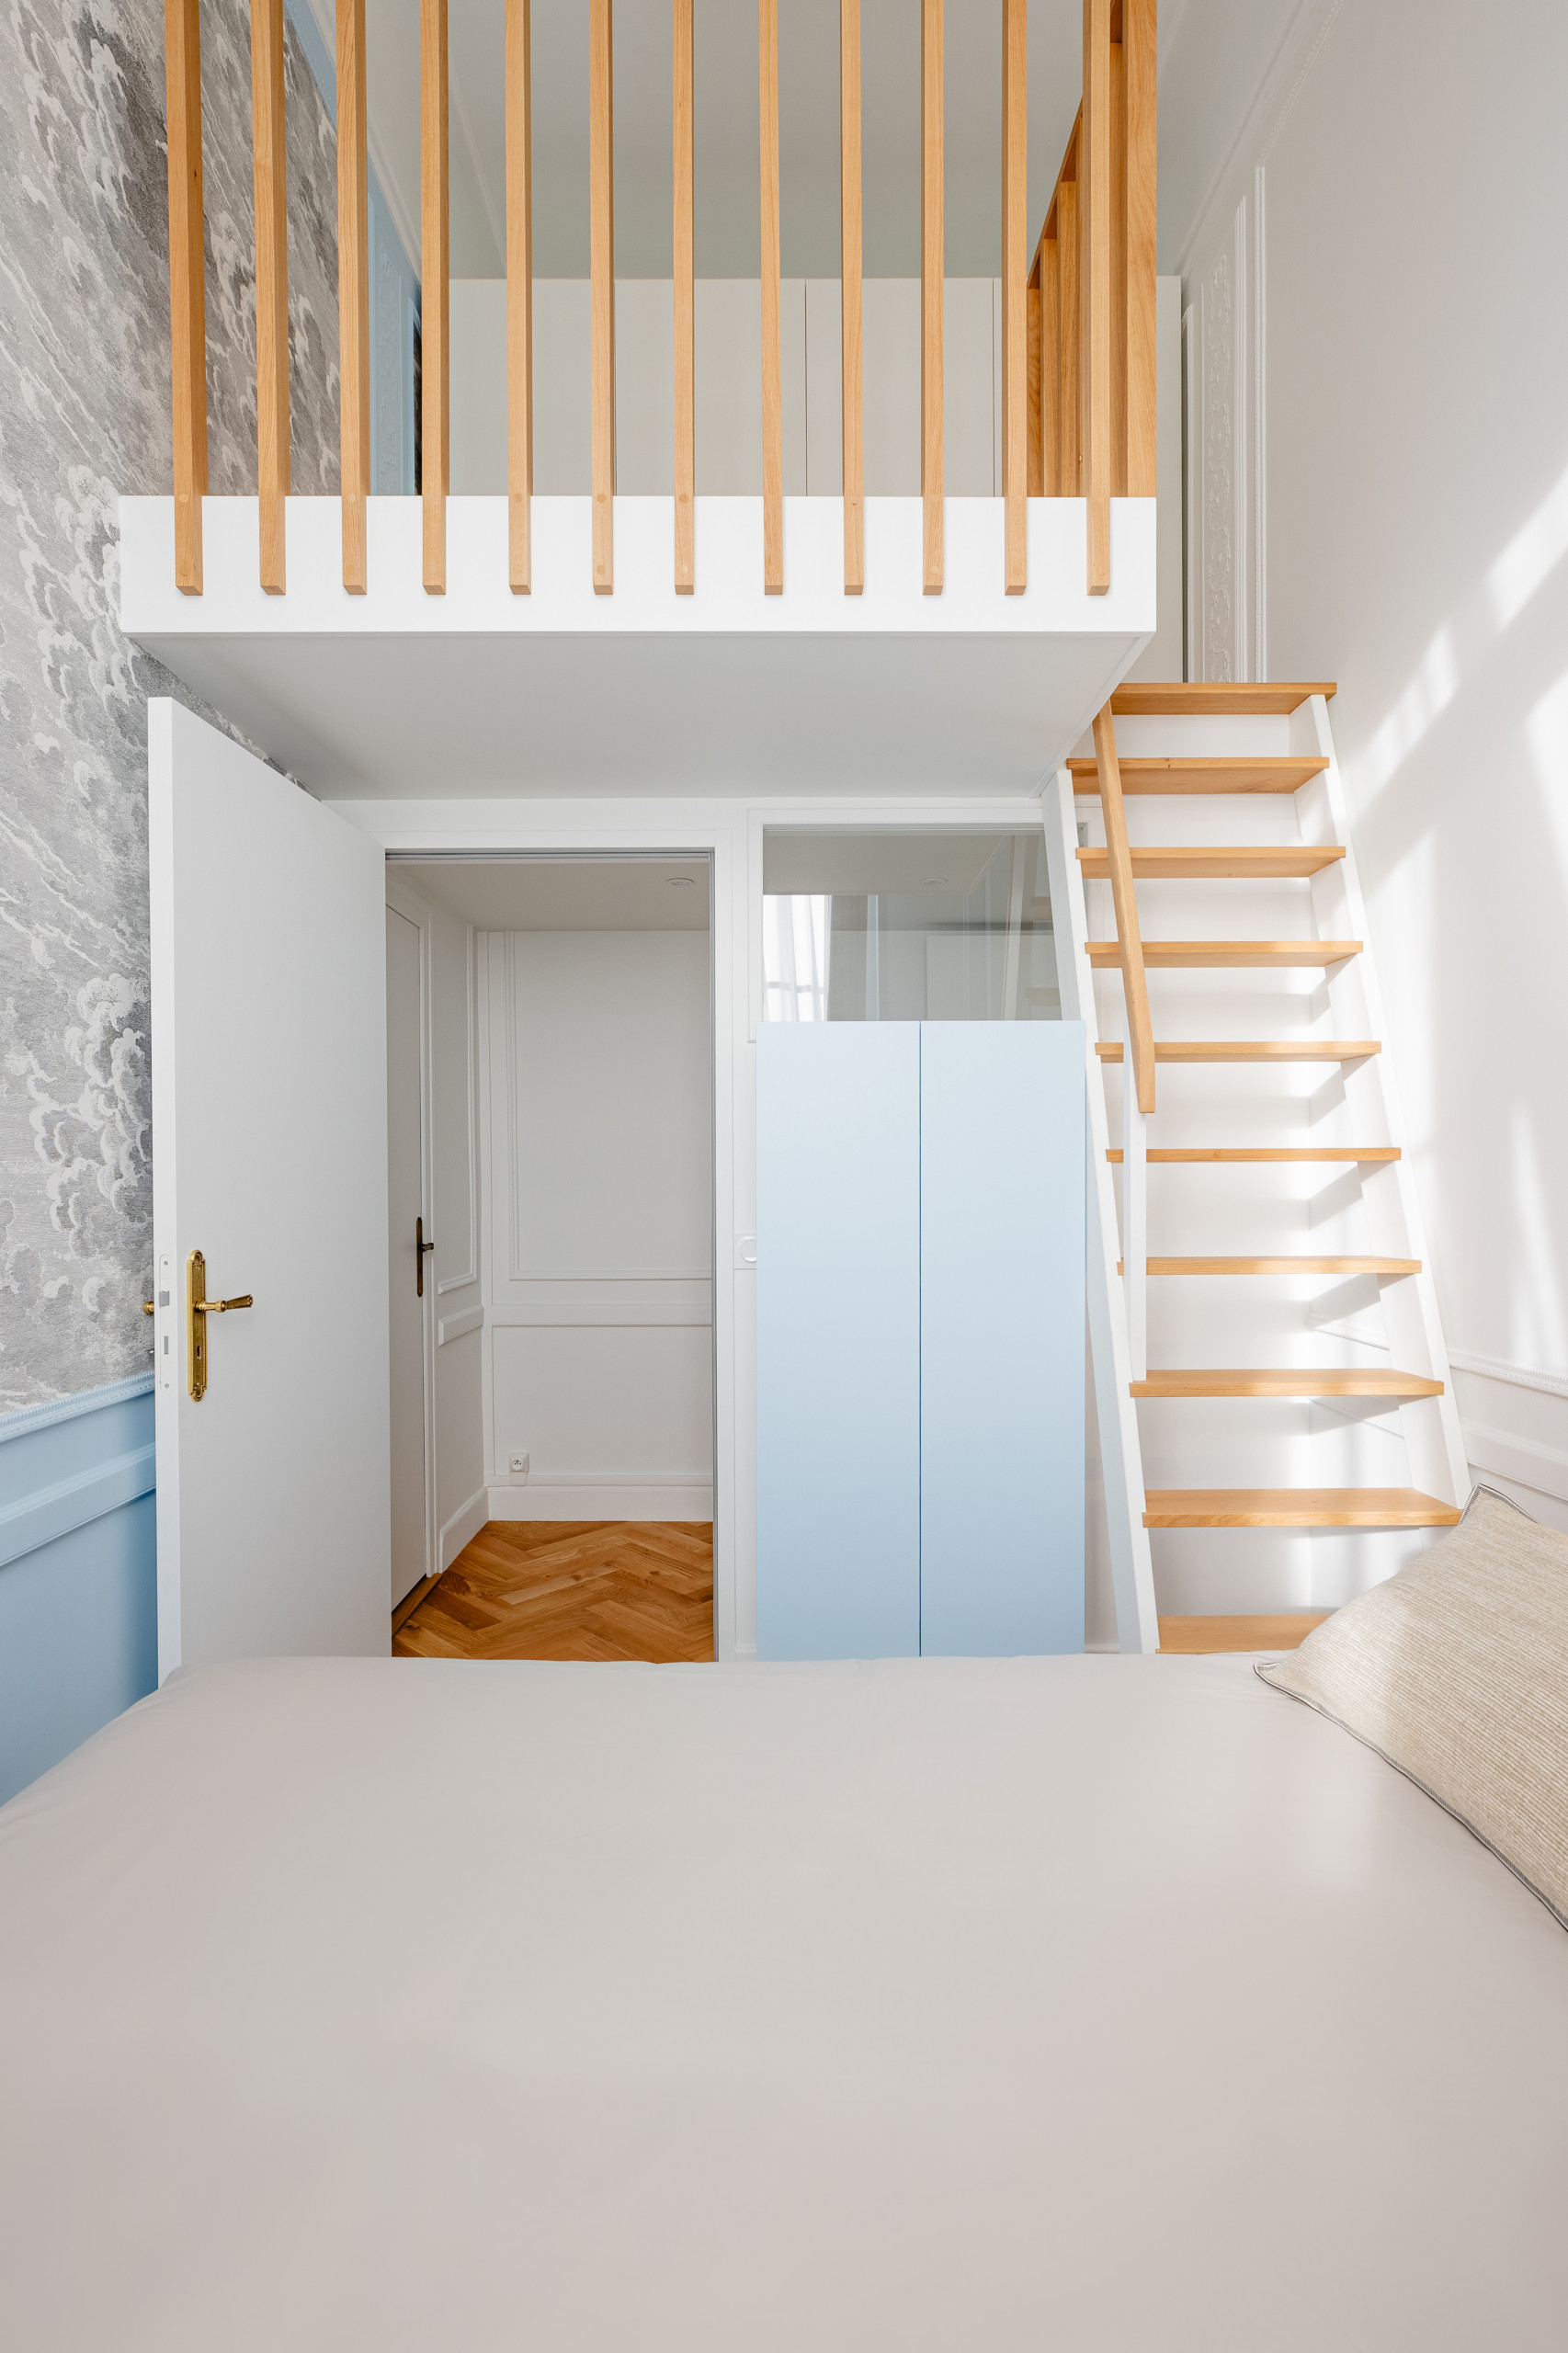 Маленькая спальня: дизайн, стили интерьера, декор и мебель, реальные фото маленьких спален